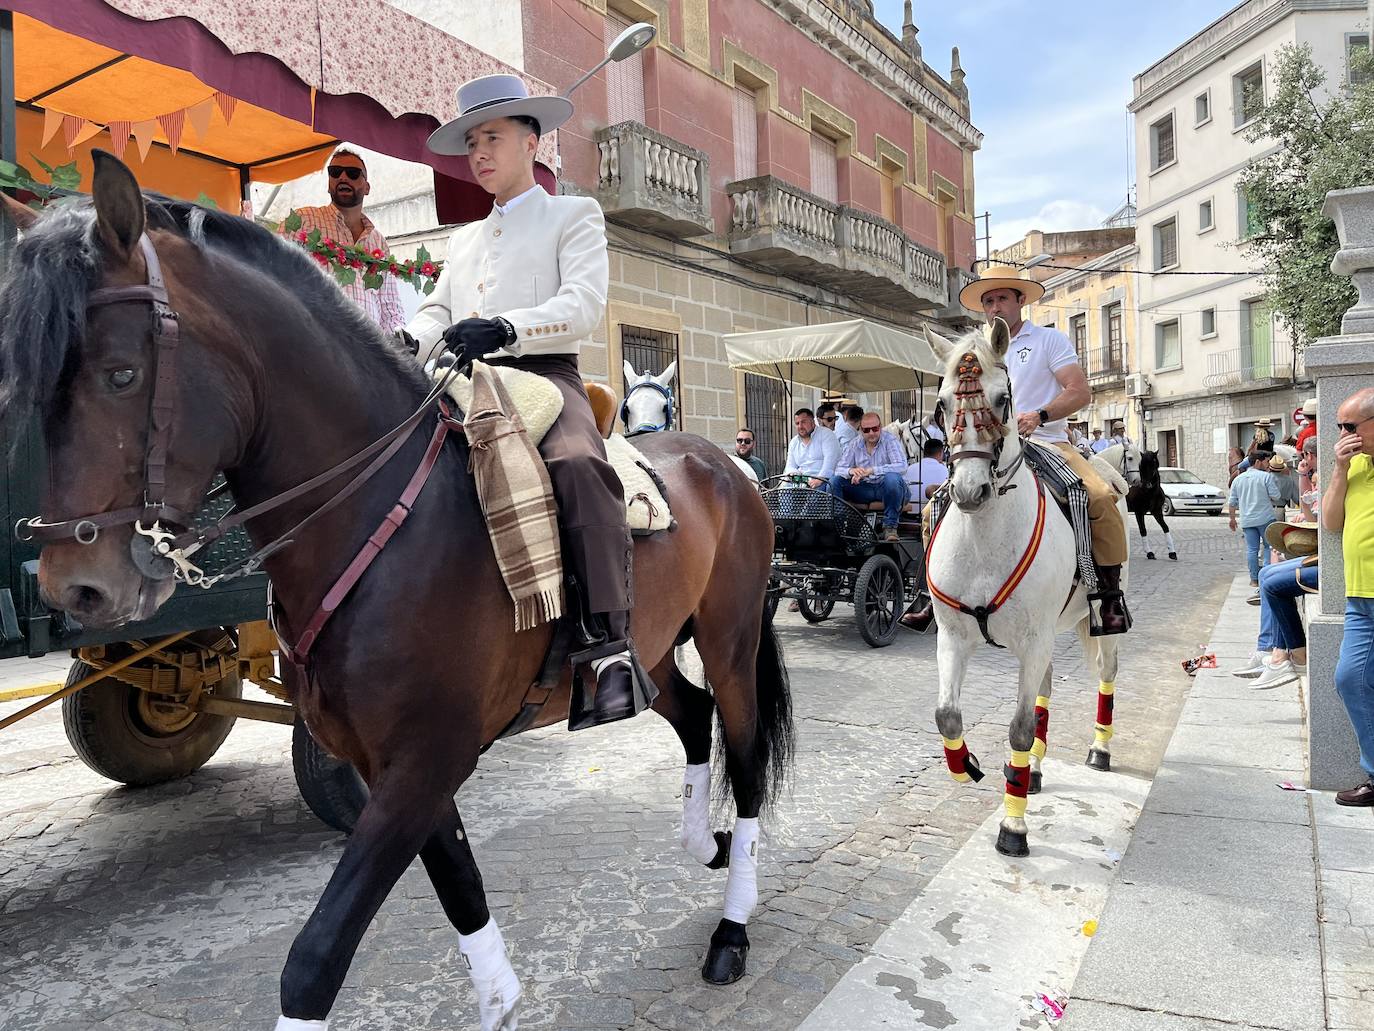 Las carrozas, carretas y caballos recuperaron la magia de San Isidro